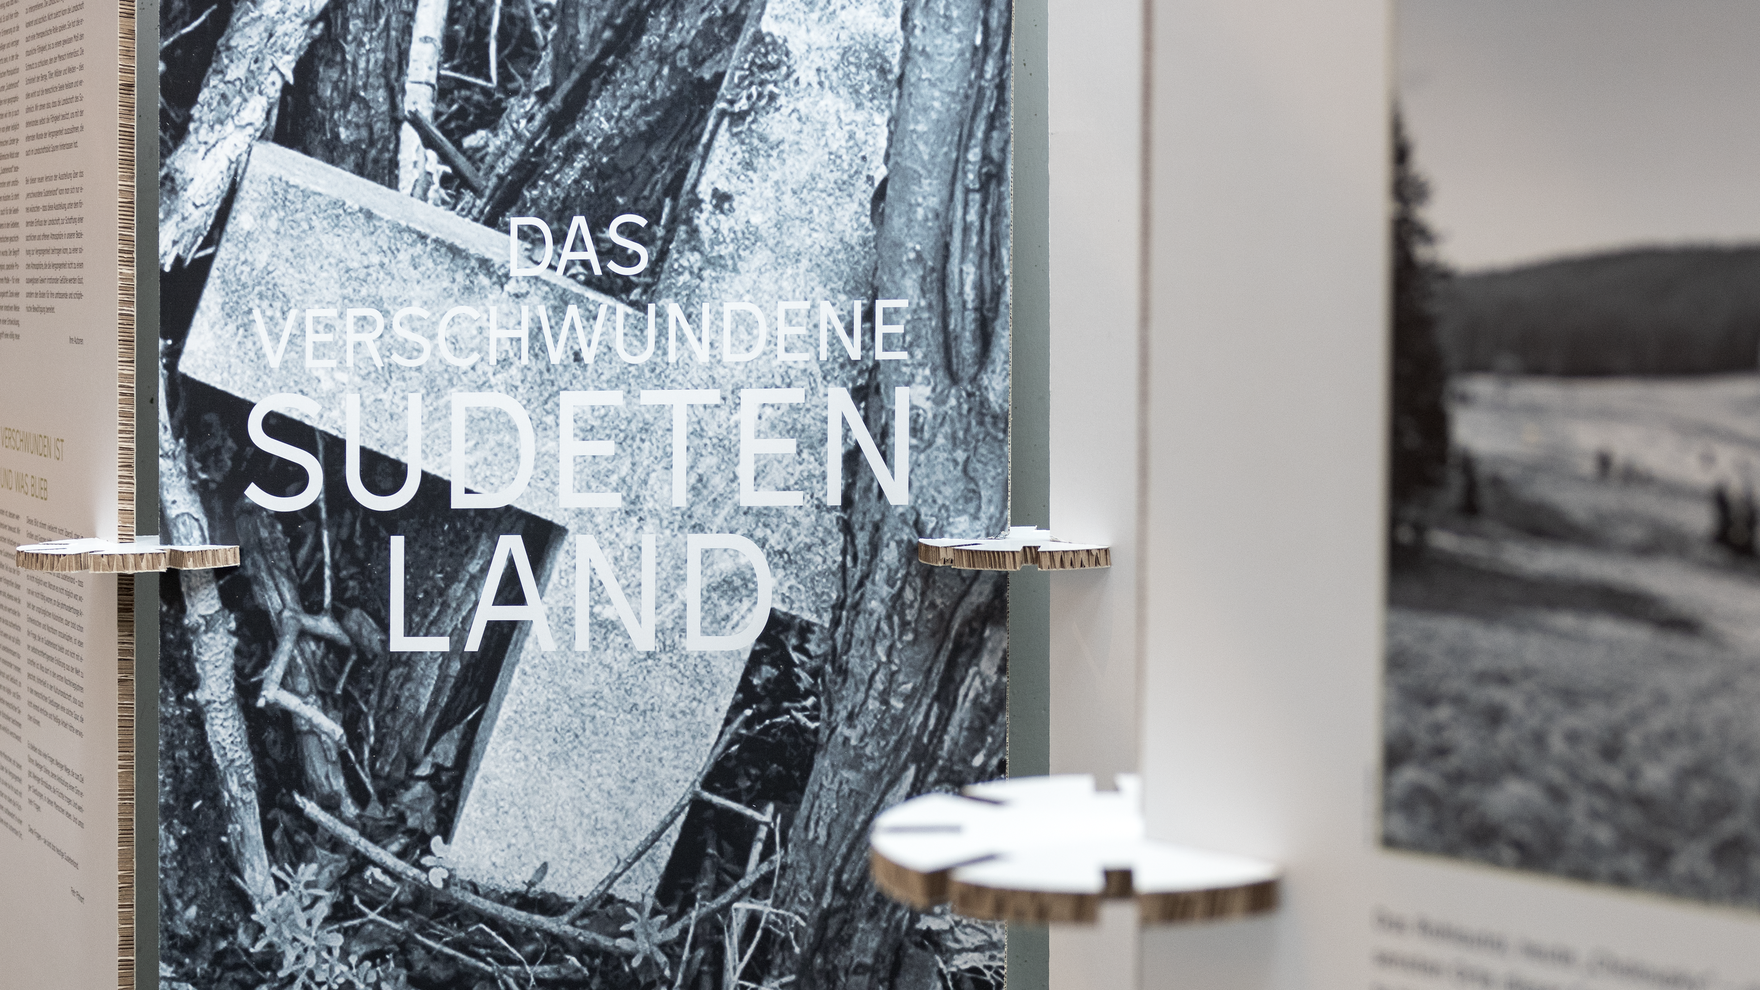 Ausstellung „Das verschwundene Sudetenland“ im SMI